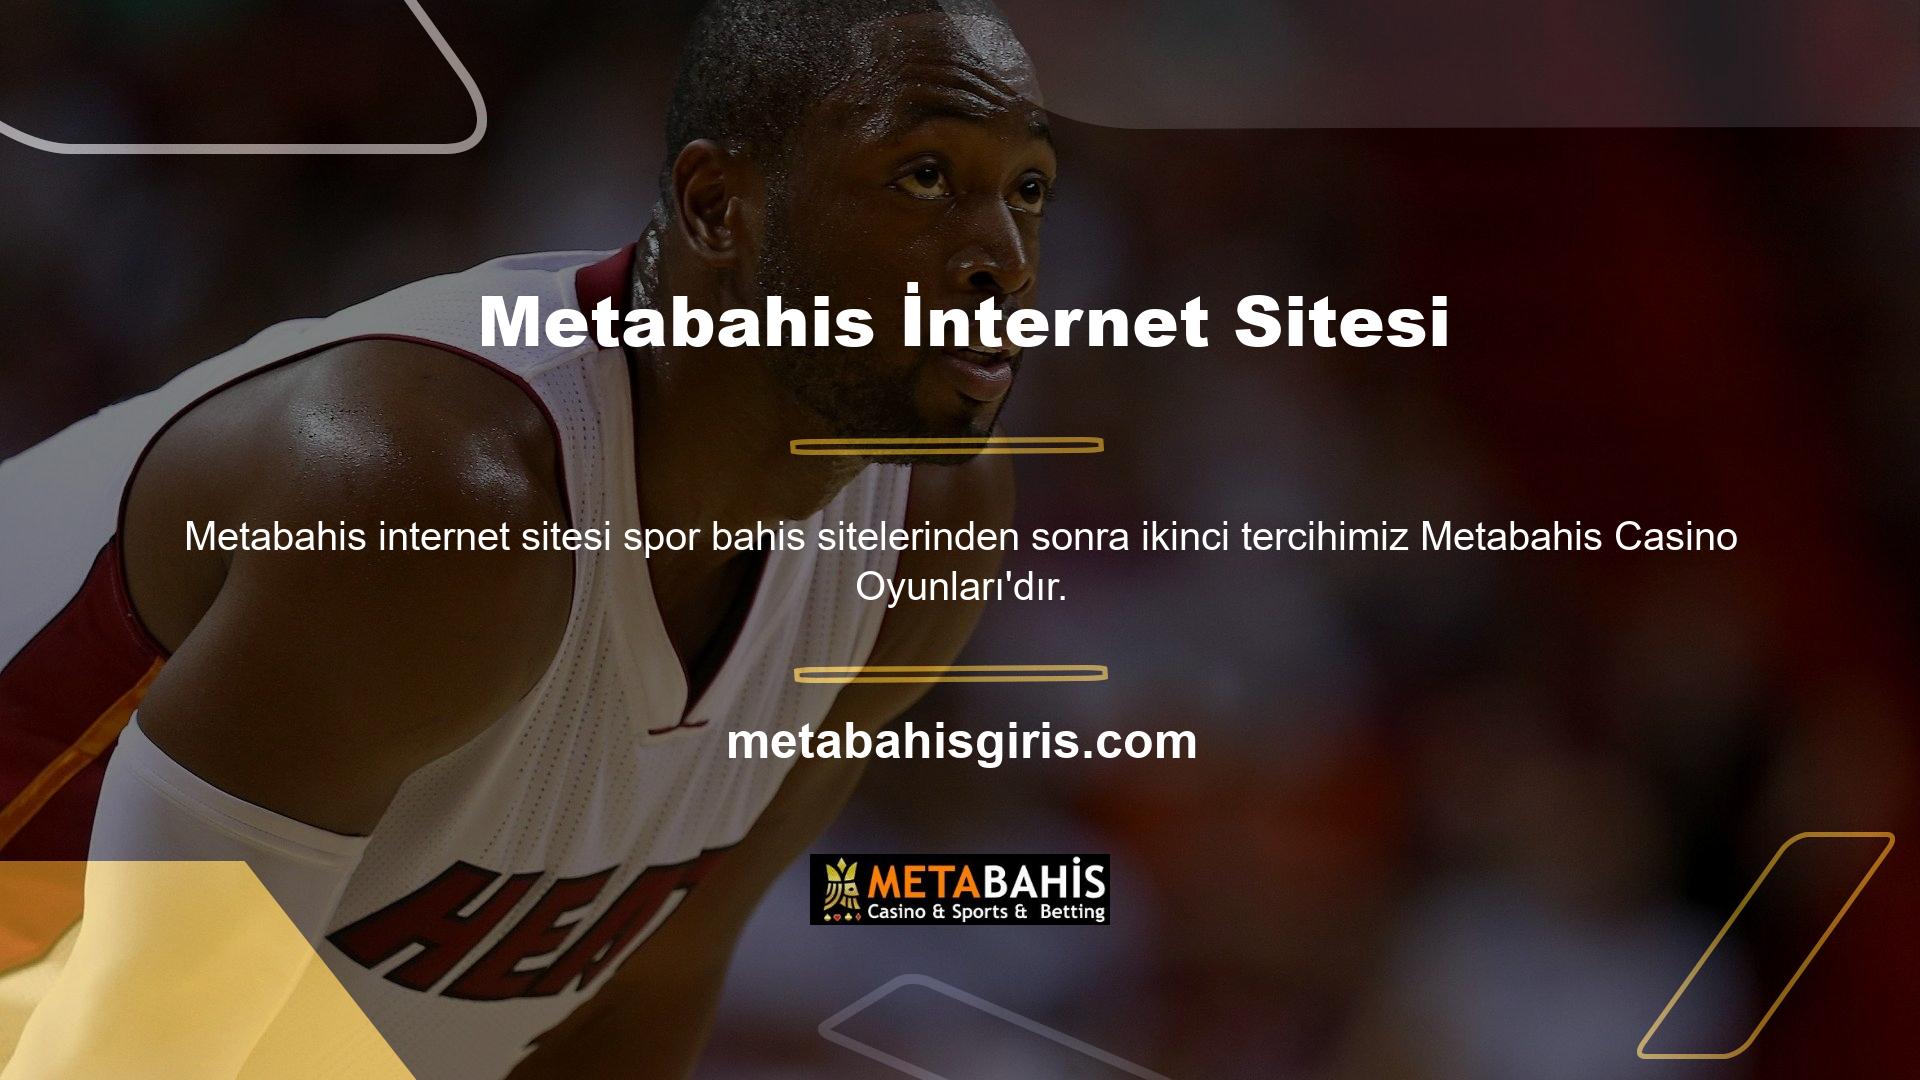 Metabahis internet sitesinin bu bölümünde hizmetin casino ve canlı casino olmak üzere iki ayrı merkezde verildiği belirtilmektedir